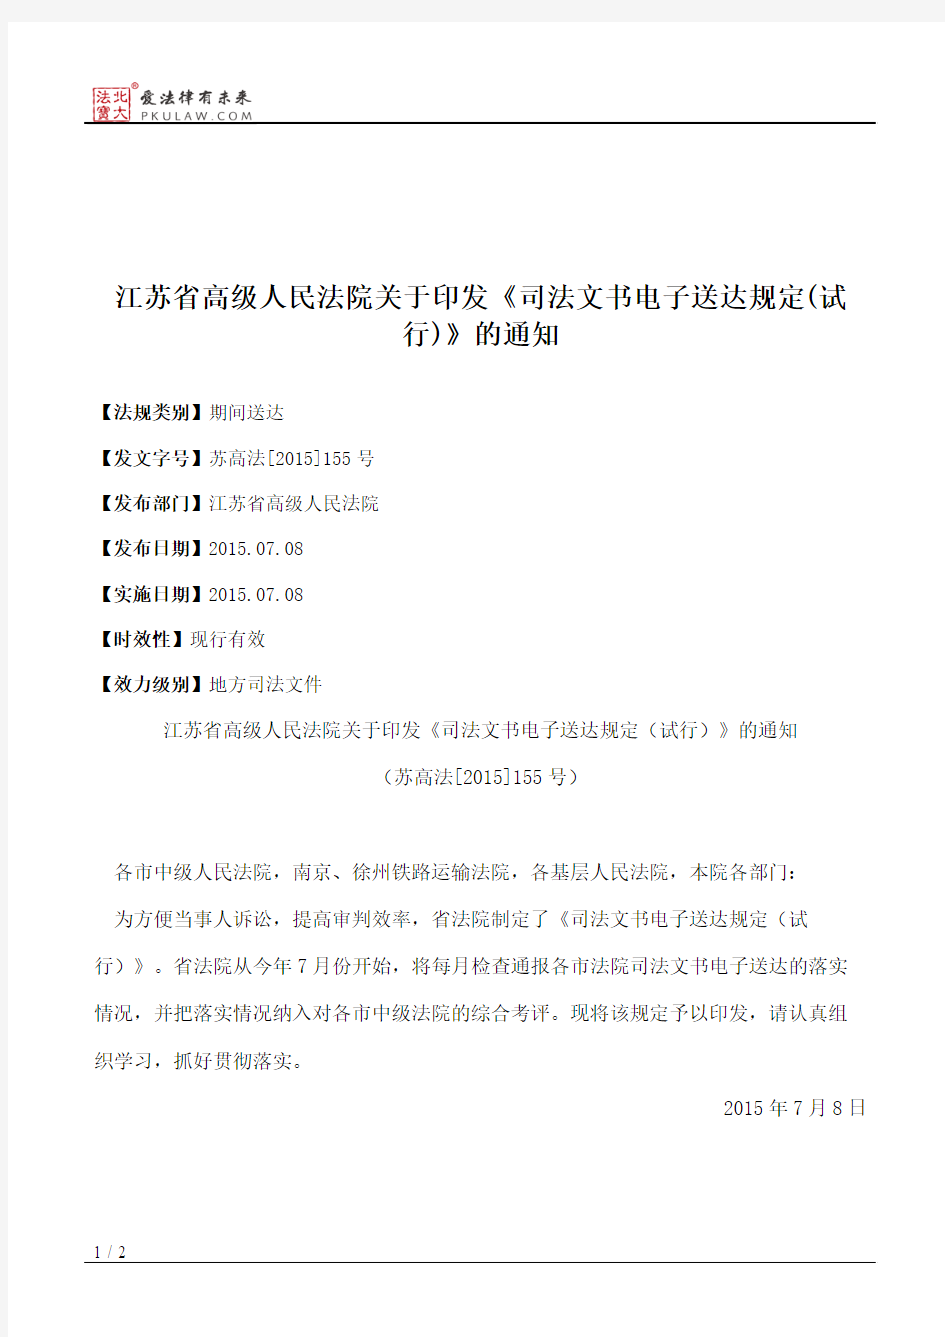 江苏省高级人民法院关于印发《司法文书电子送达规定(试行)》的通知